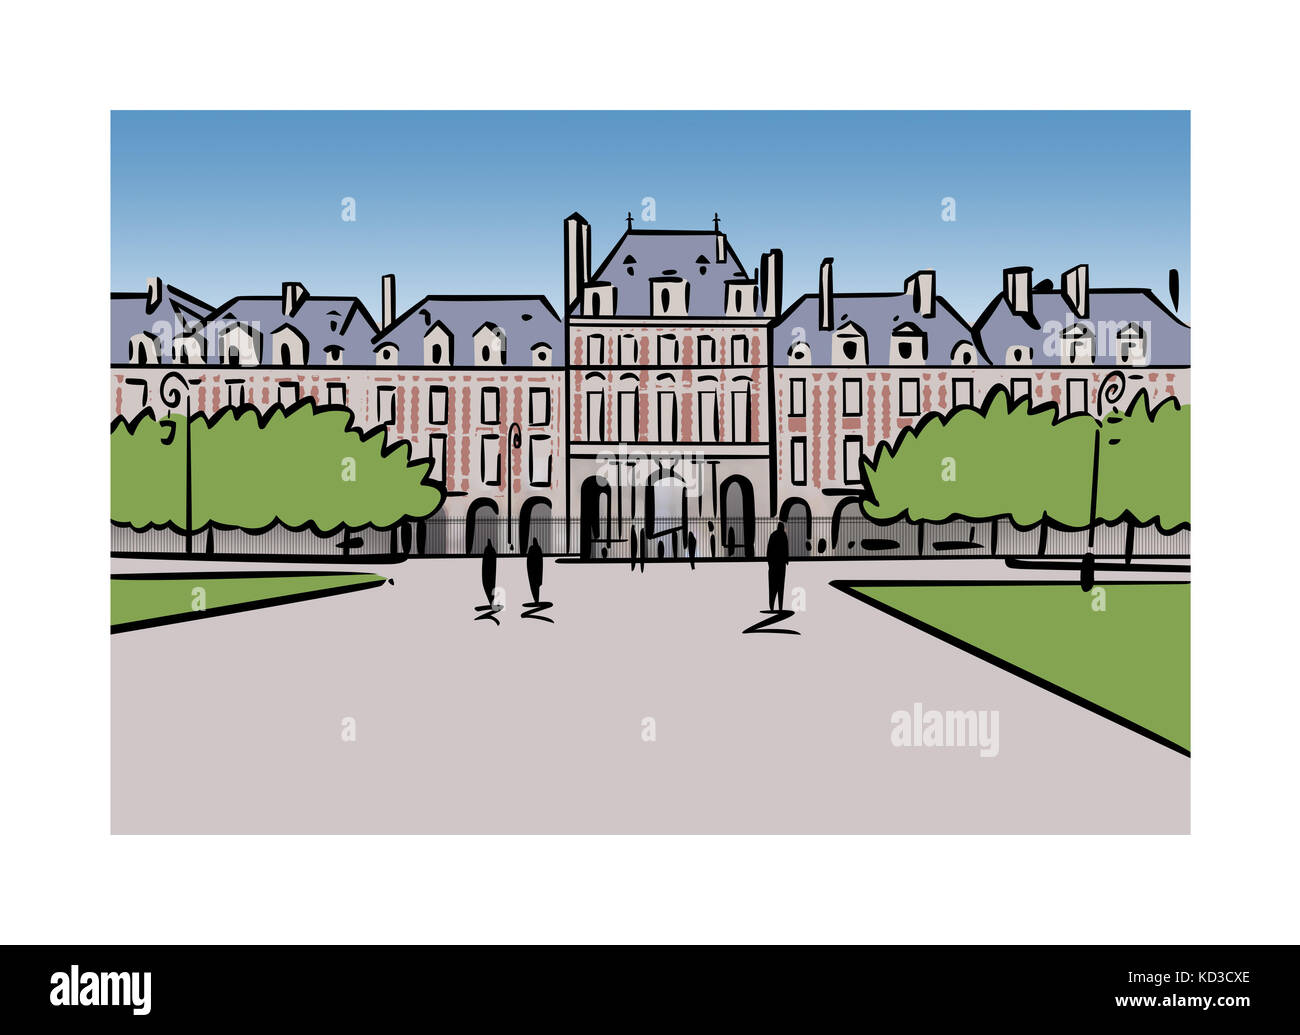 Illustration of Place des Vosges in Paris, France Stock Photo